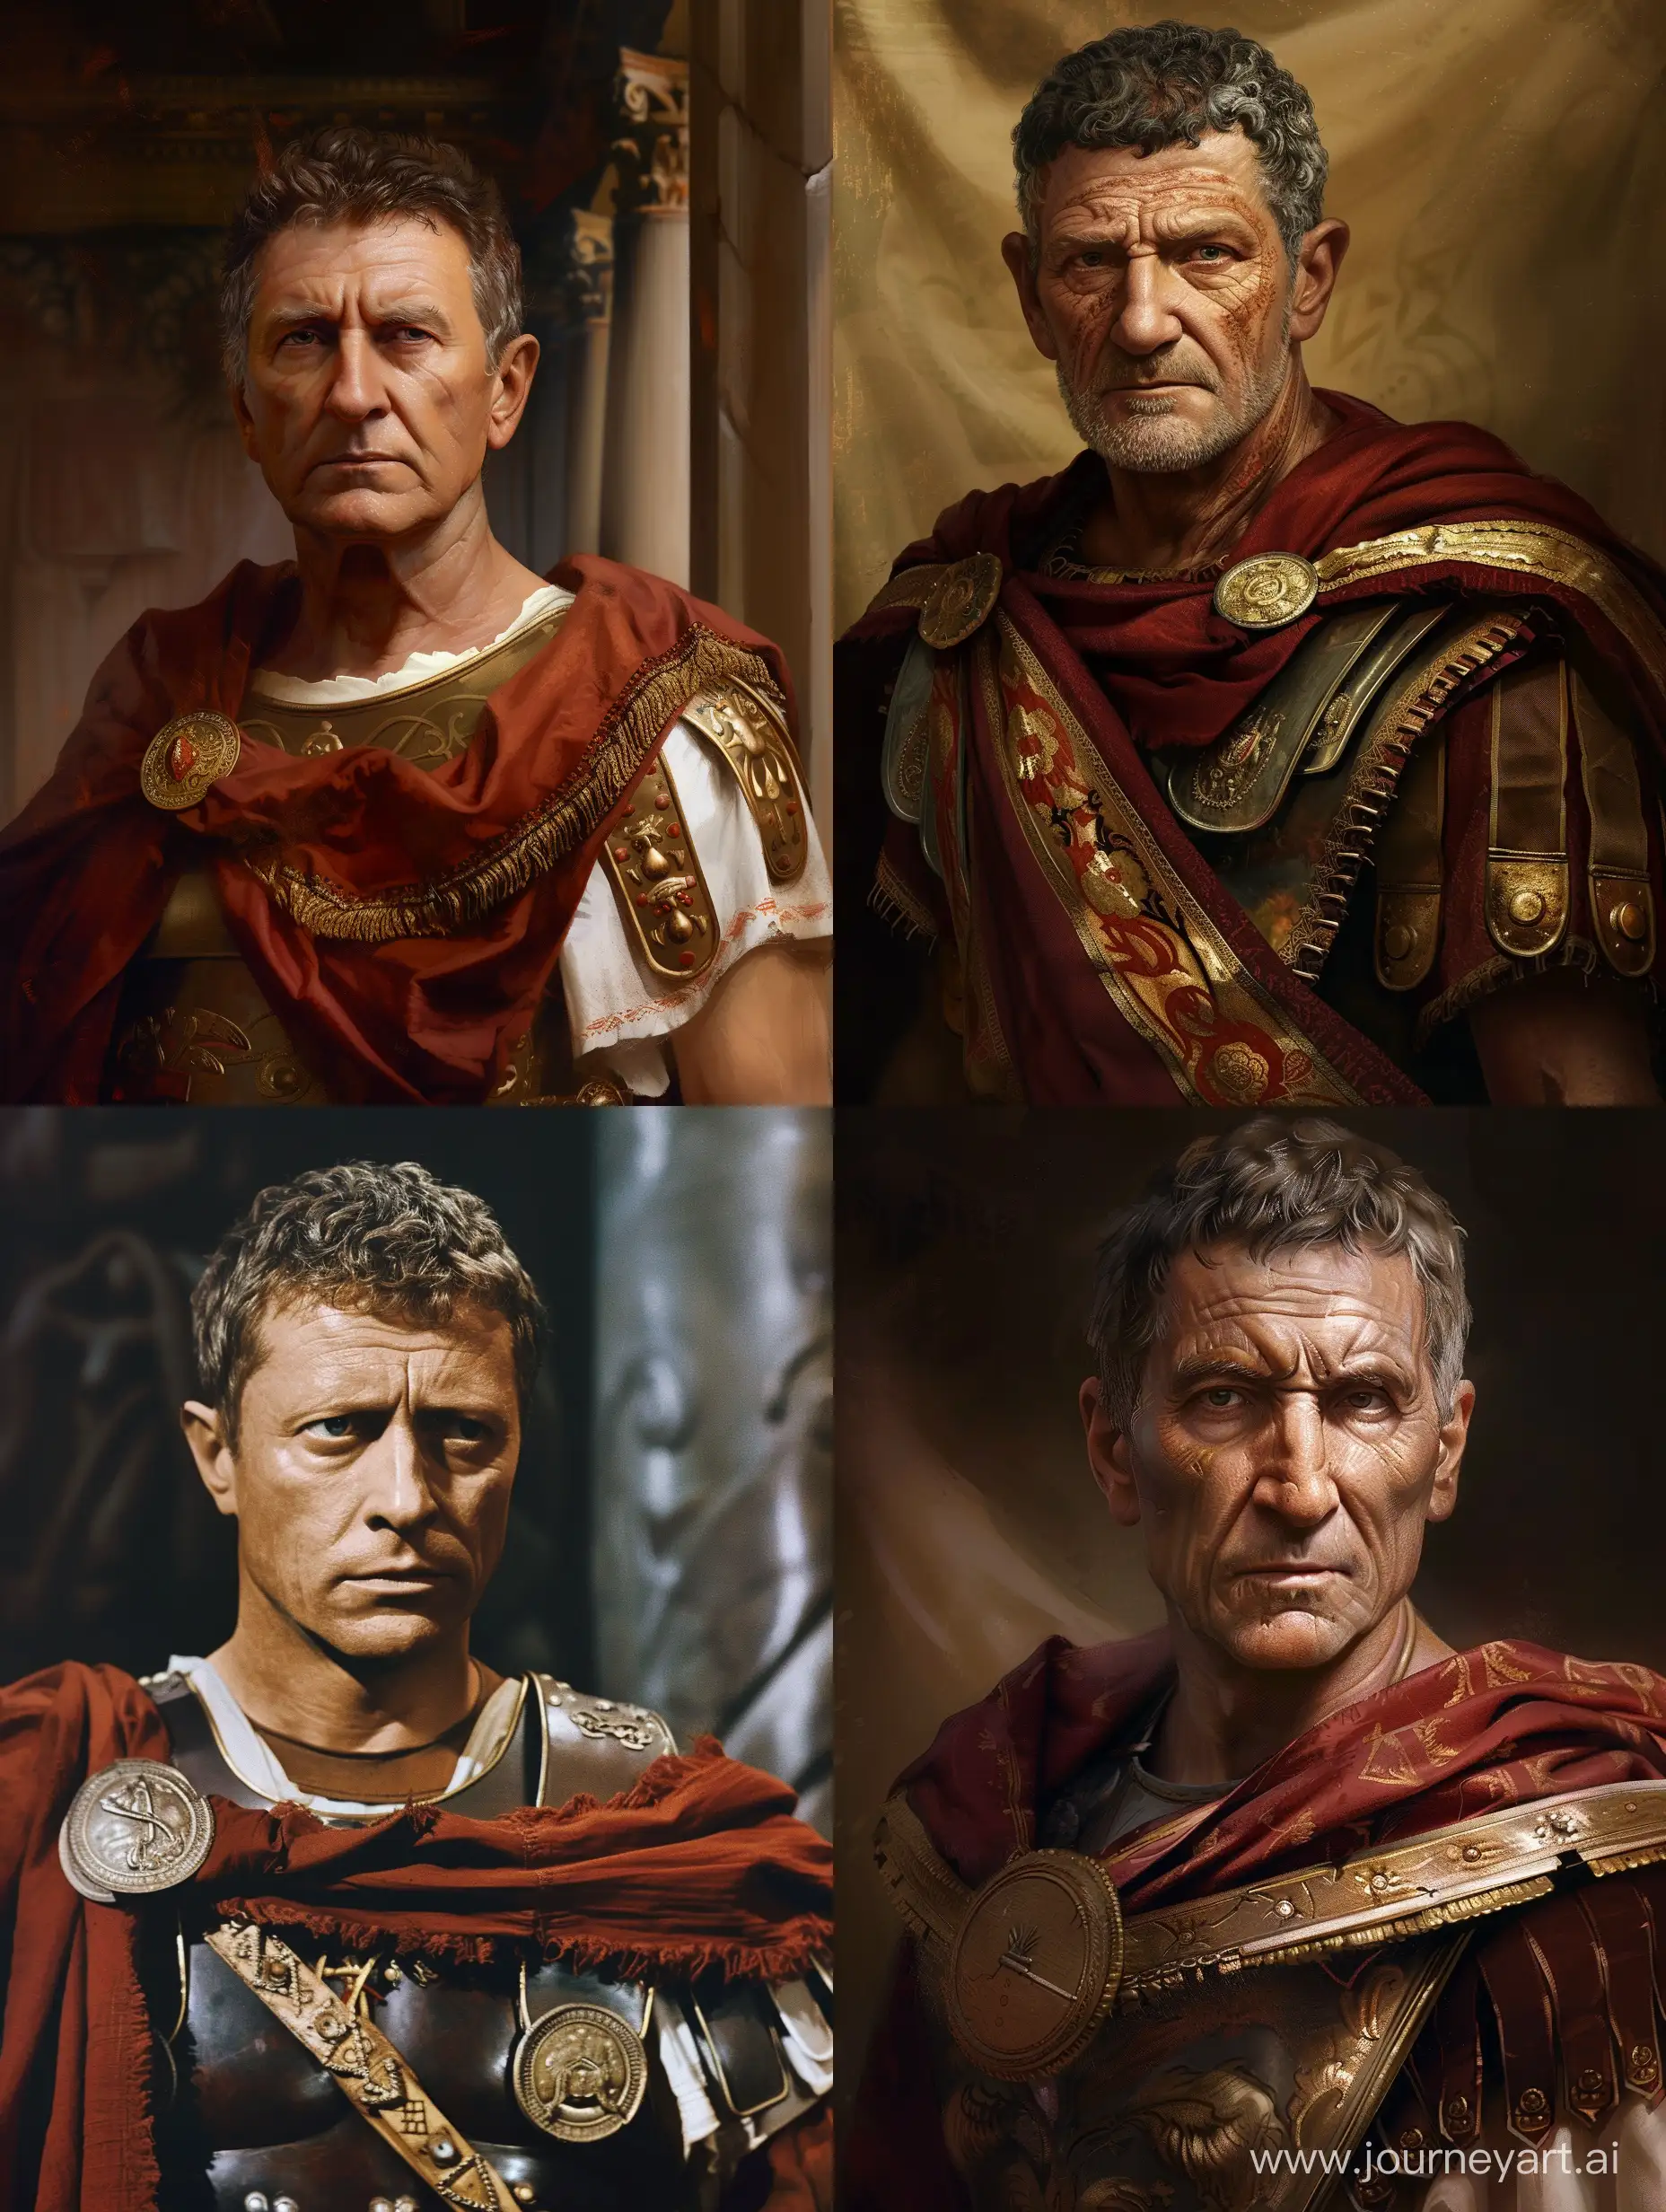 تصویر واقعی از کلودیوس امپراتور روم که بسیار خشن است